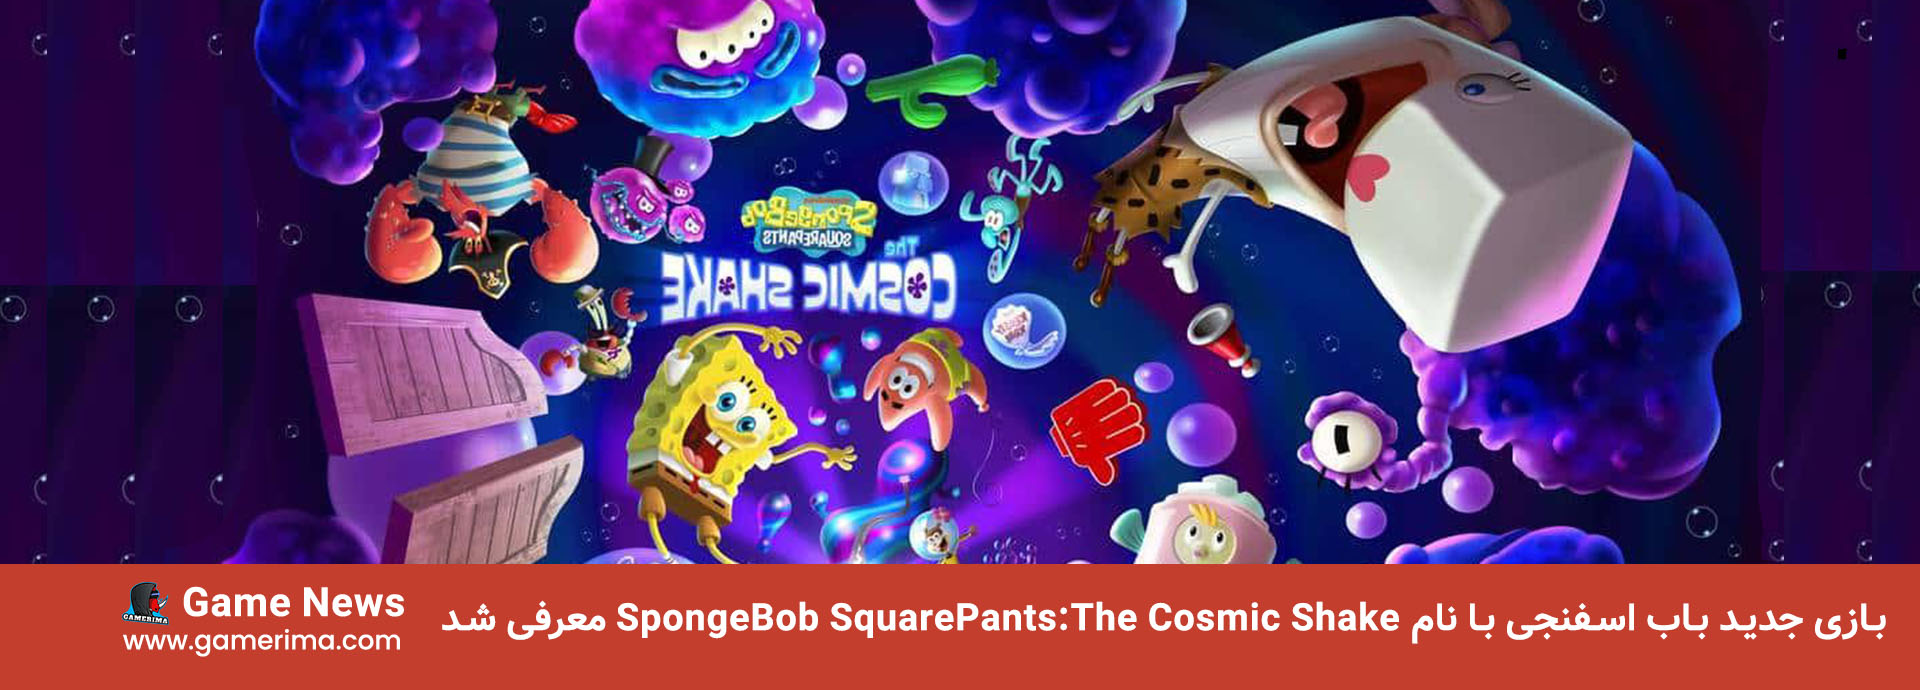 بازی جدید باب اسفنجی با نام SpongeBob SquarePants:The Cosmic Shake معرفی شد